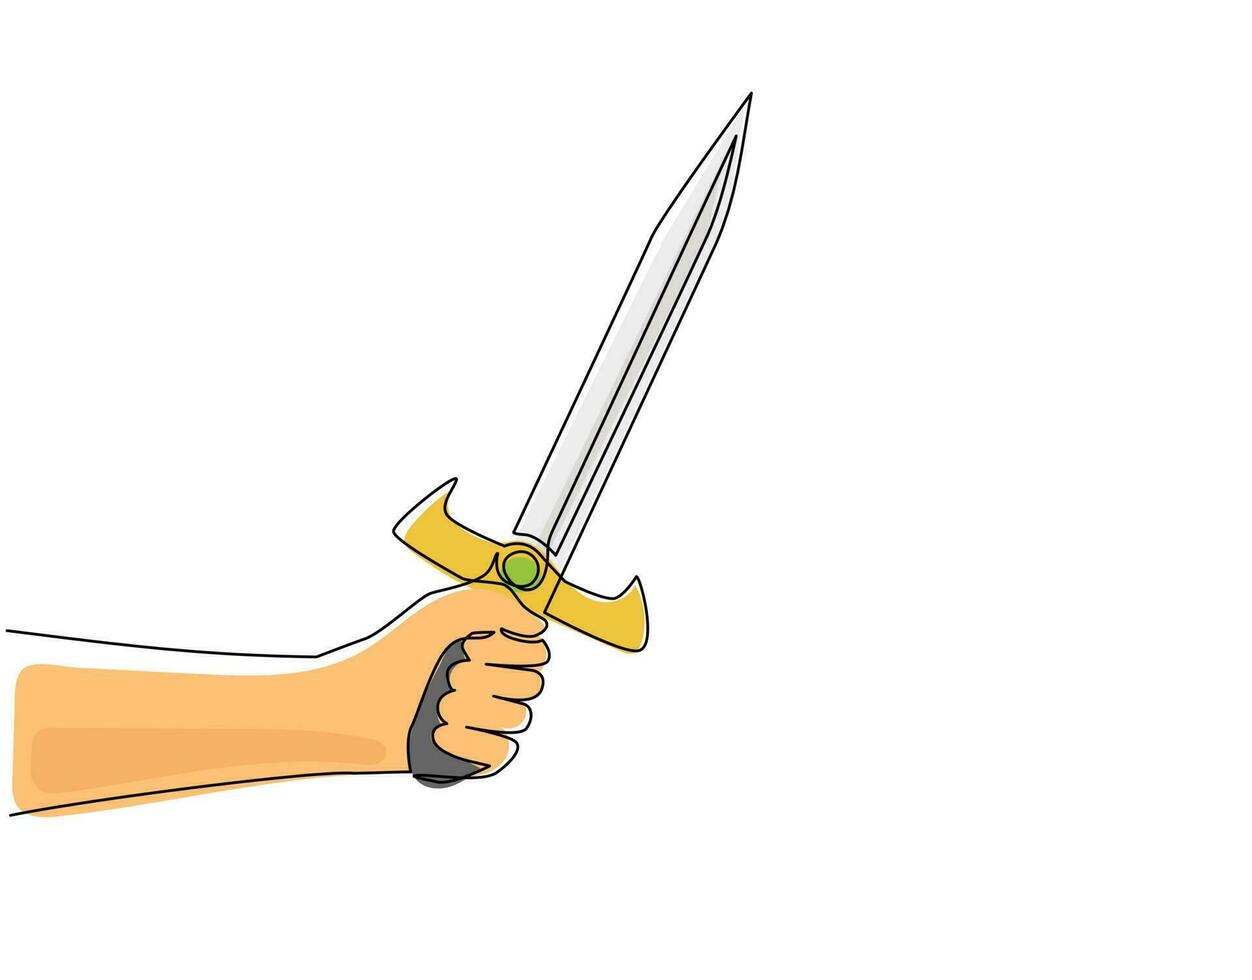 einzelne durchgehende strichzeichnung mann hand halten schwert krieger. Hand des Kriegers mit Schwert. Design der Kriegerhand, die ein mittelalterliches scharfes Schwert hält. dynamische einzeilige abgehobene betragsgrafikdesign-vektorillustration vektor